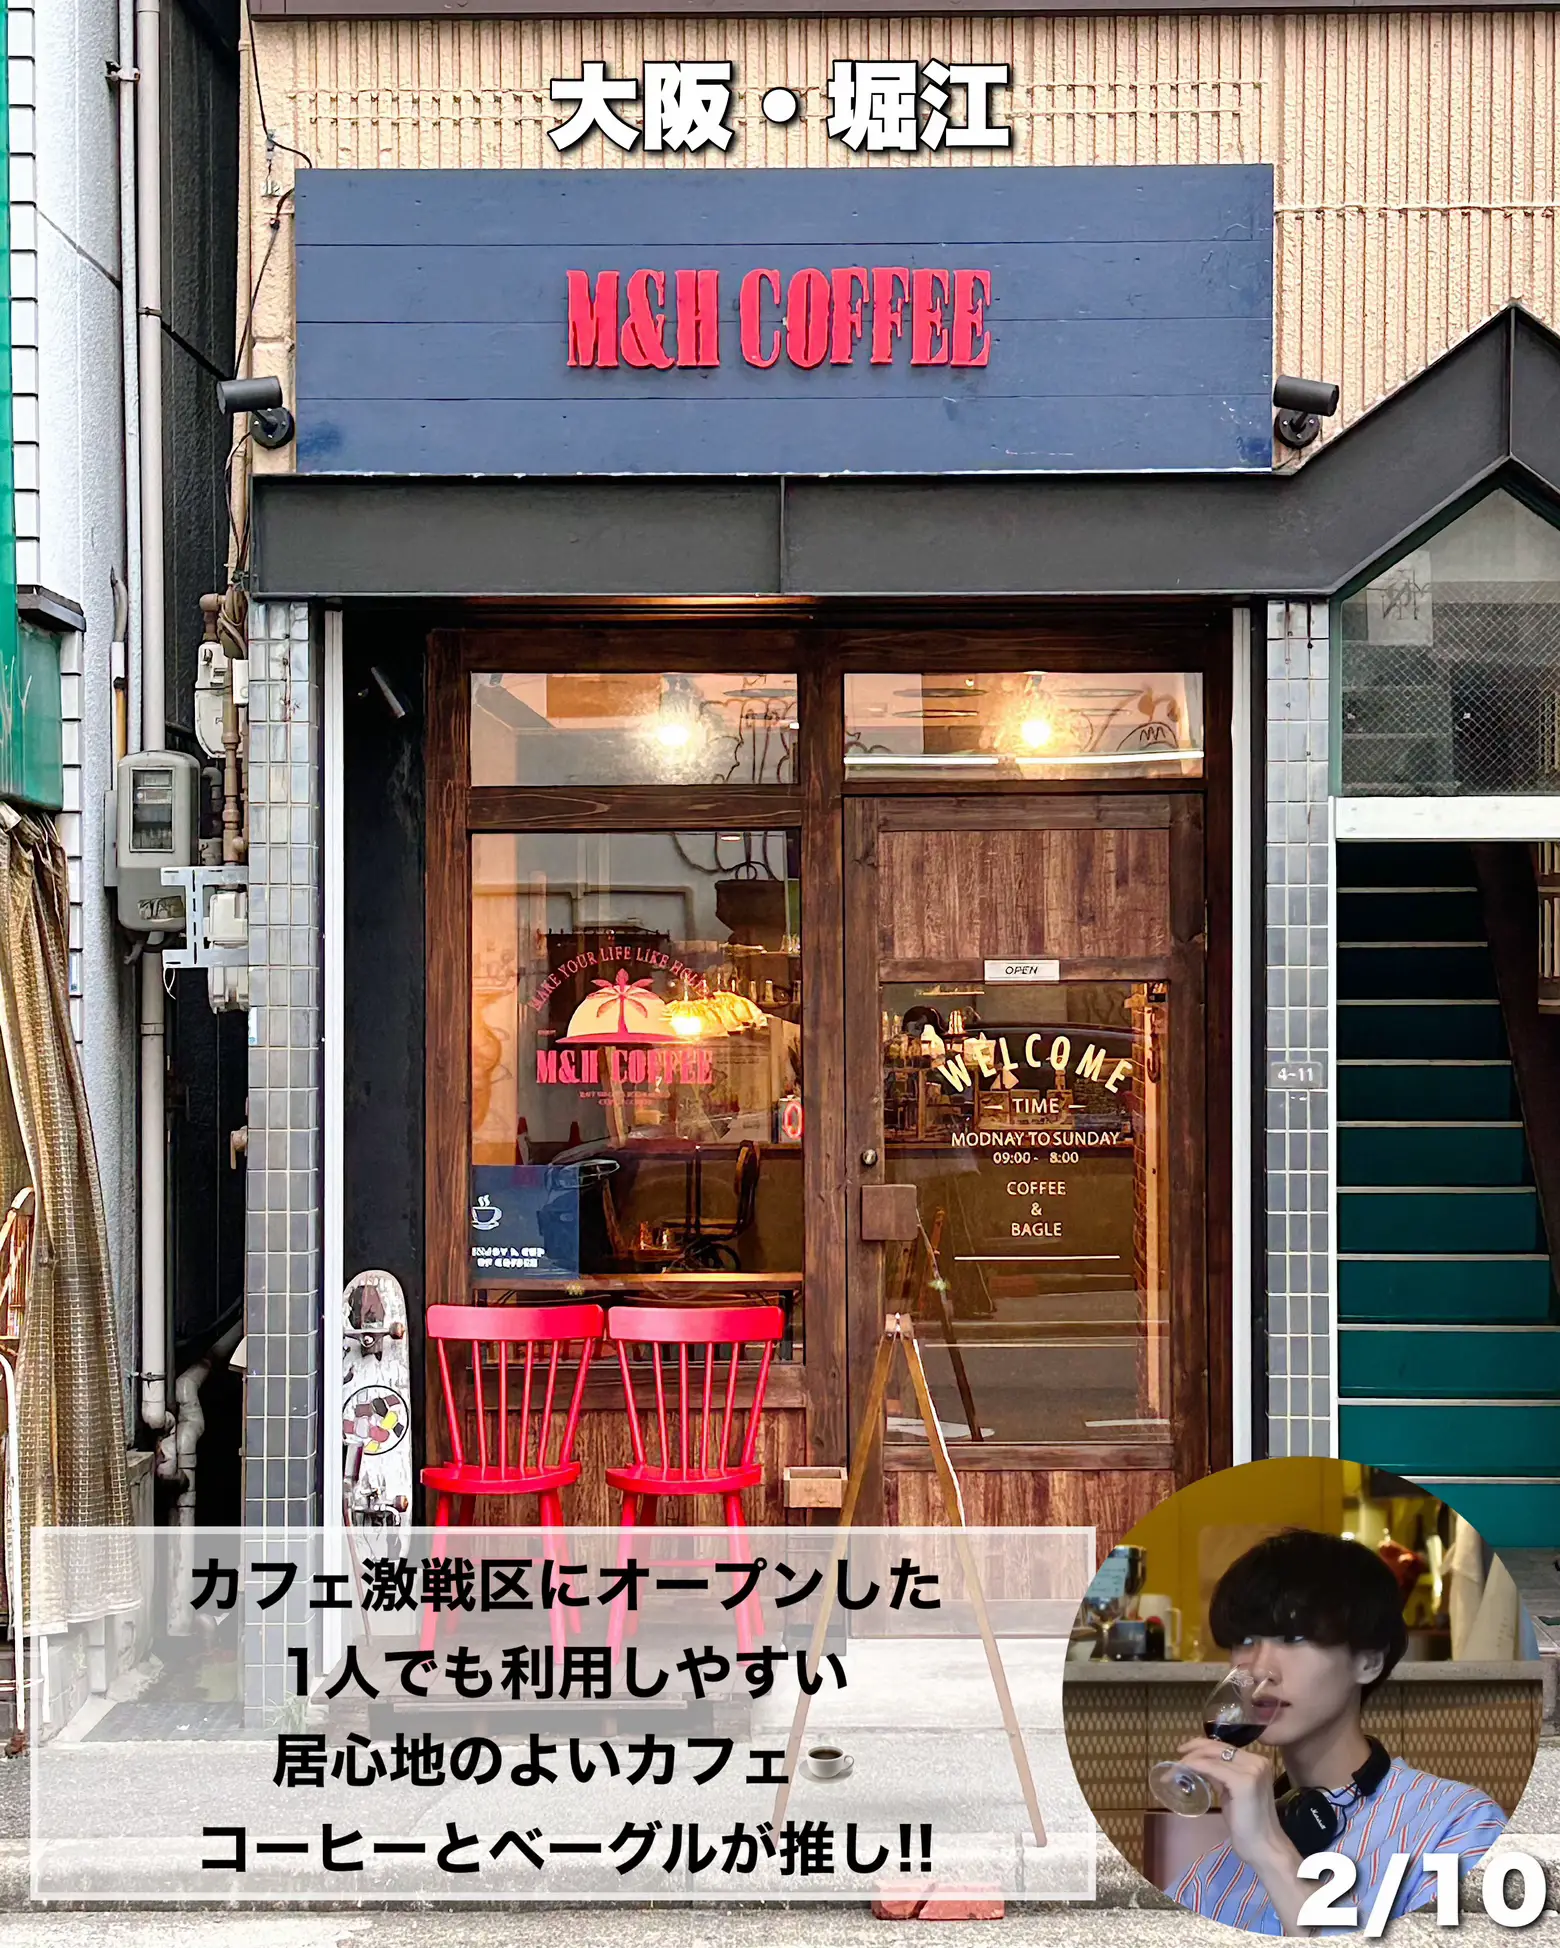 【新店情報】堀江に西海岸風ヴィンテージカフェがOPEN!! 居心地もよく1人でも利用しやすい☝️☕️の画像 (1枚目)